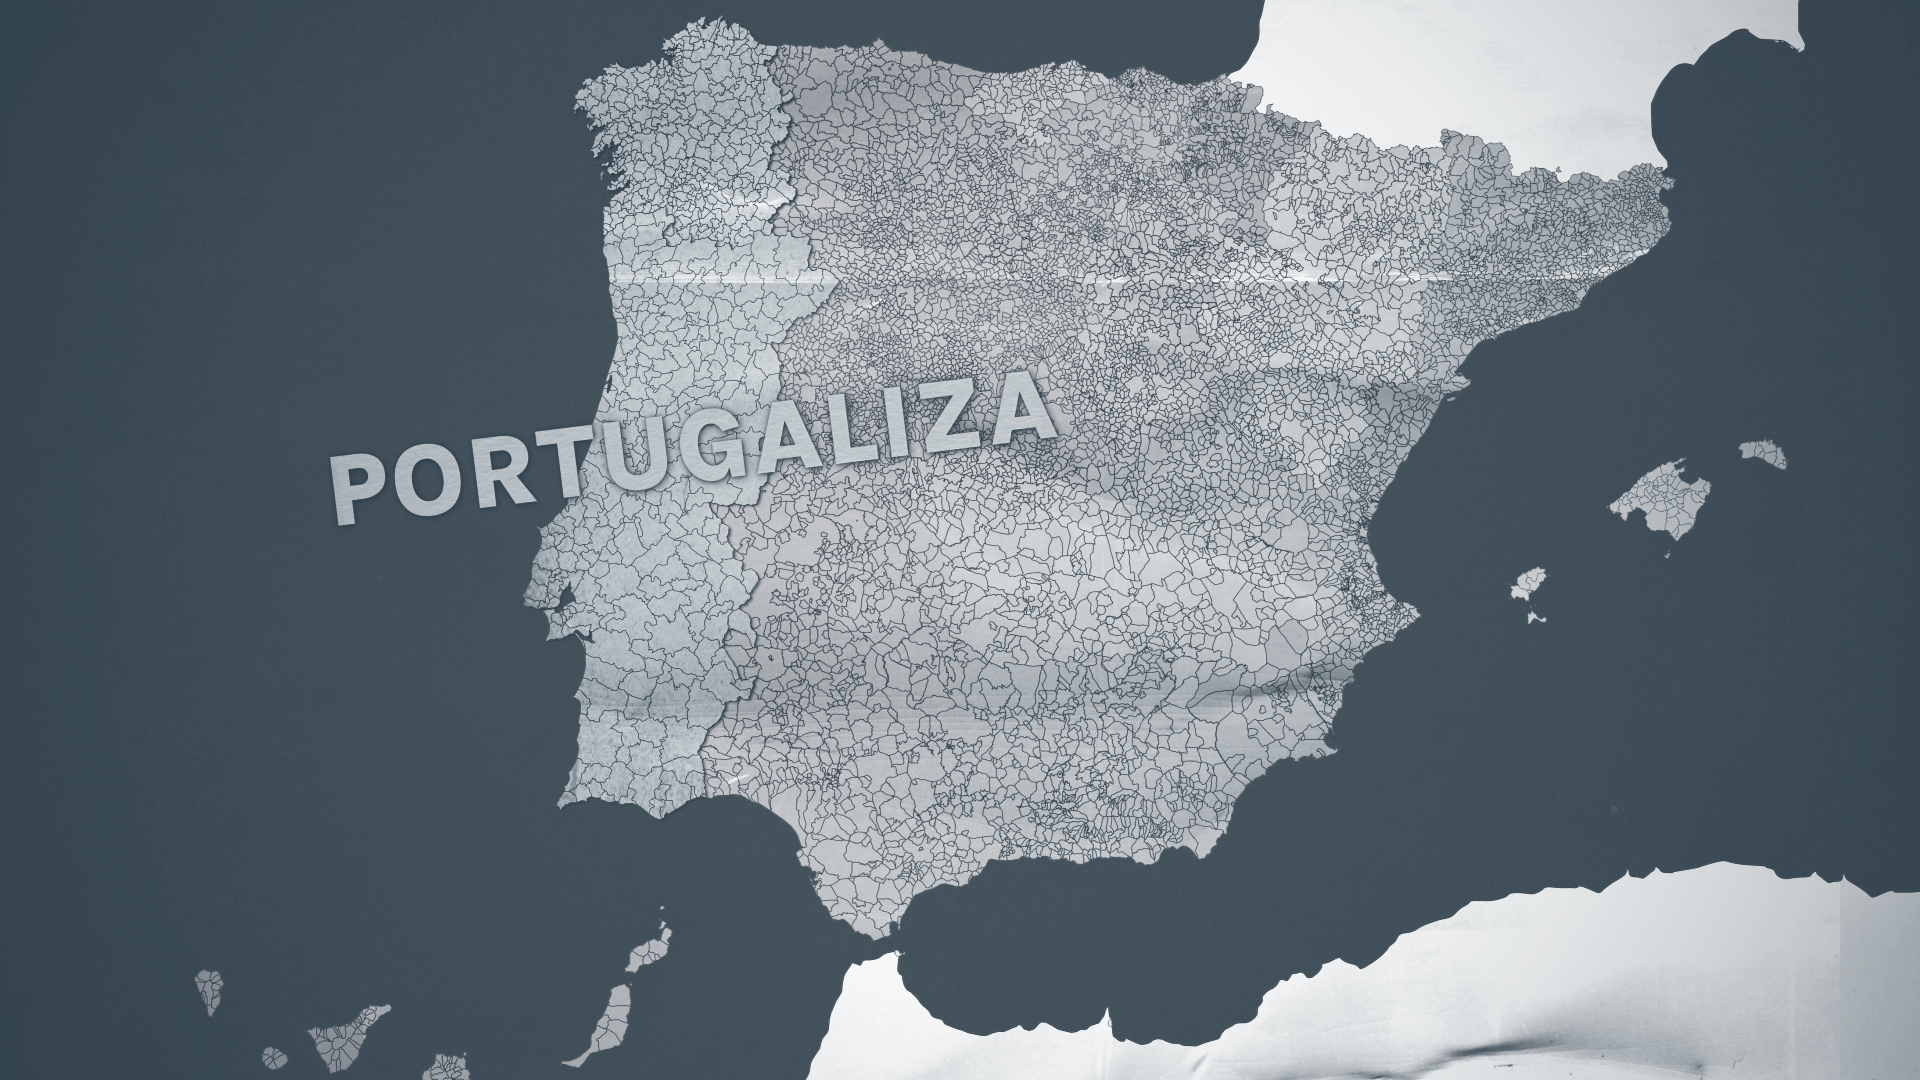 Mapa que simula a união territorial entre Portugal e a Galiza